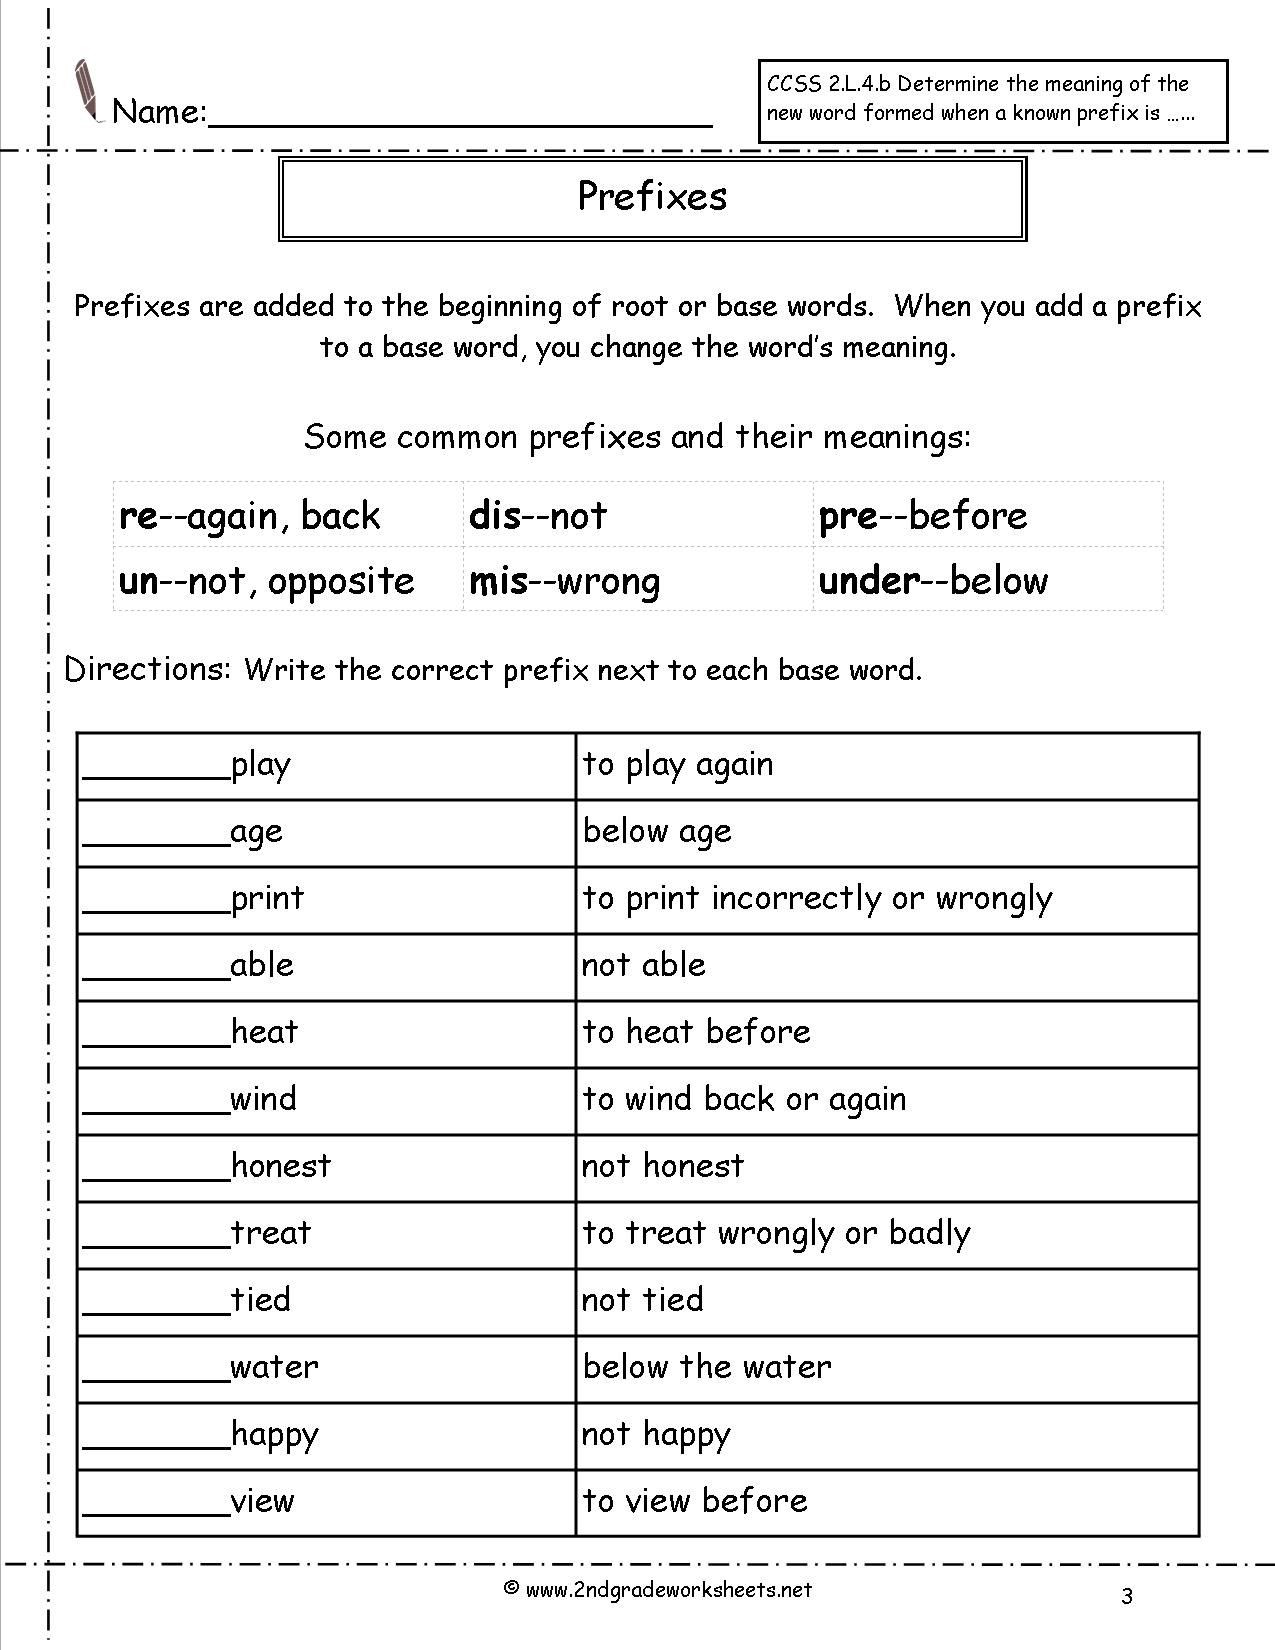 Prefixes Worksheets 4th Grade Prefixes Worksheet